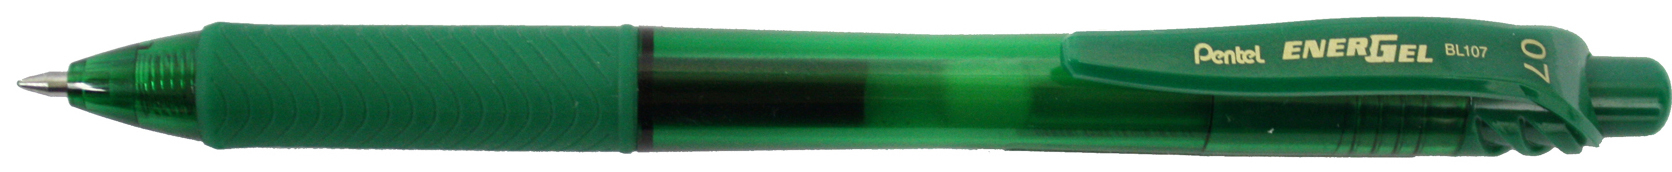 PENTEL Roller EnerGel X 0.7mm BL107-DX vert